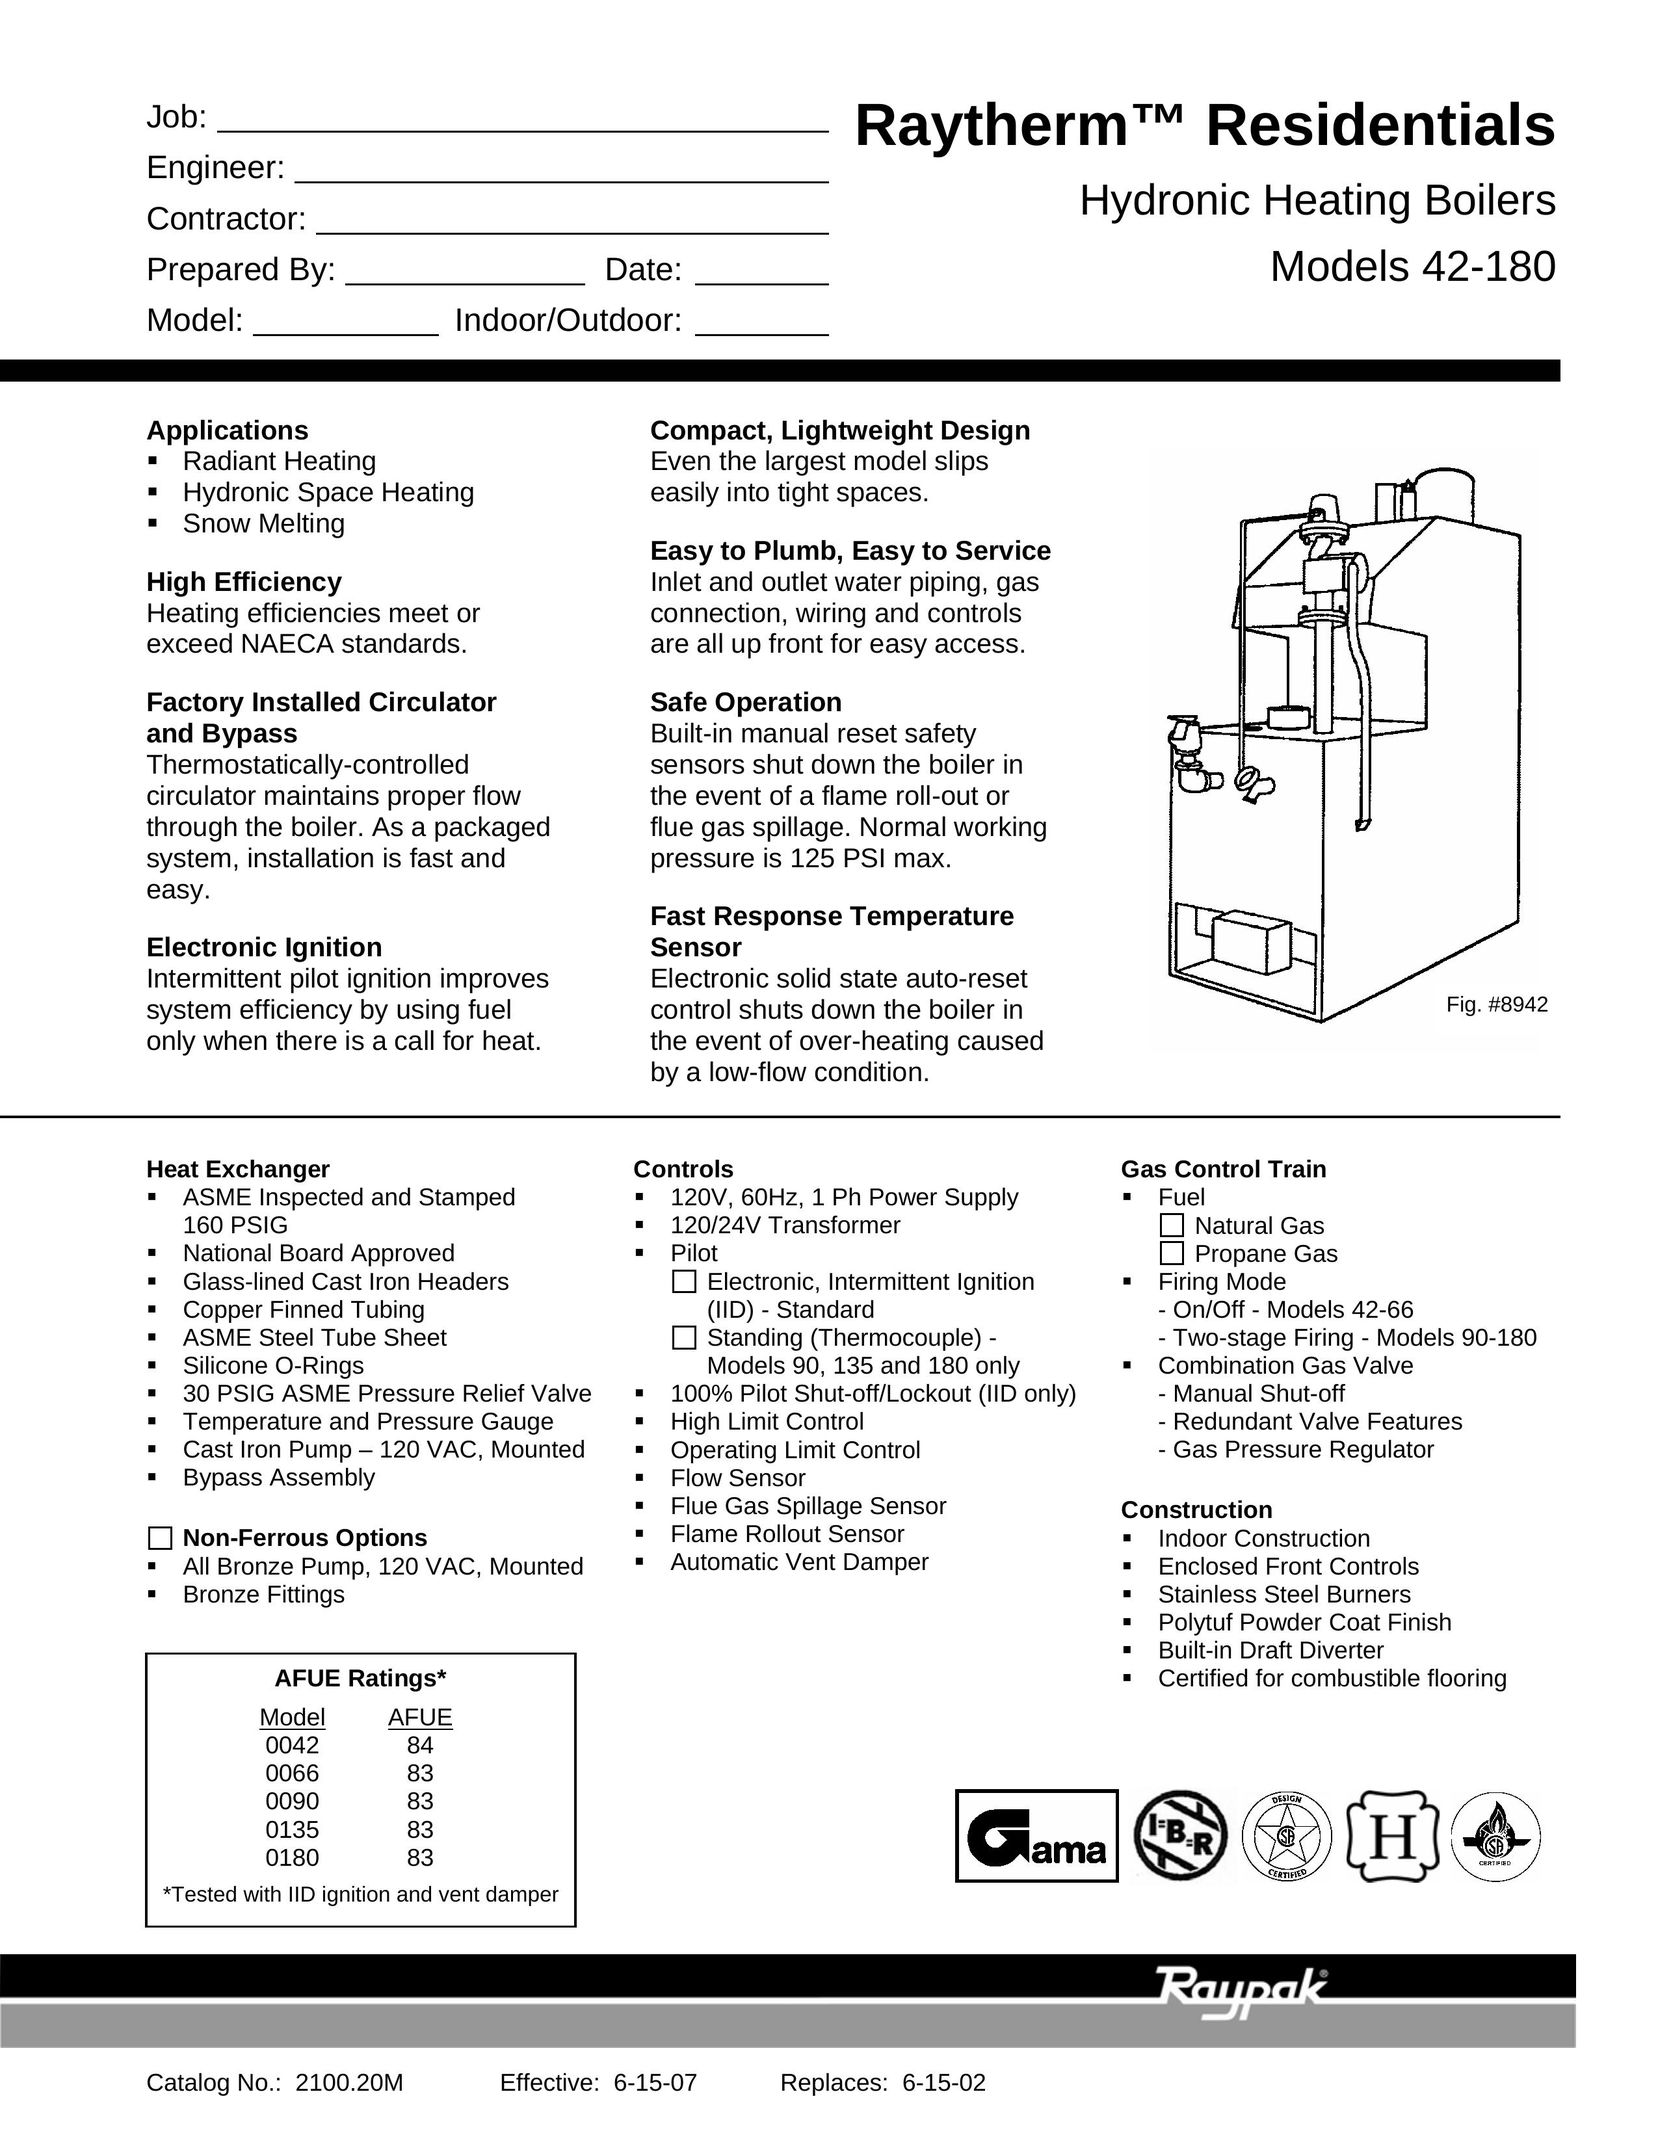 Raypak 42-180 Boiler User Manual